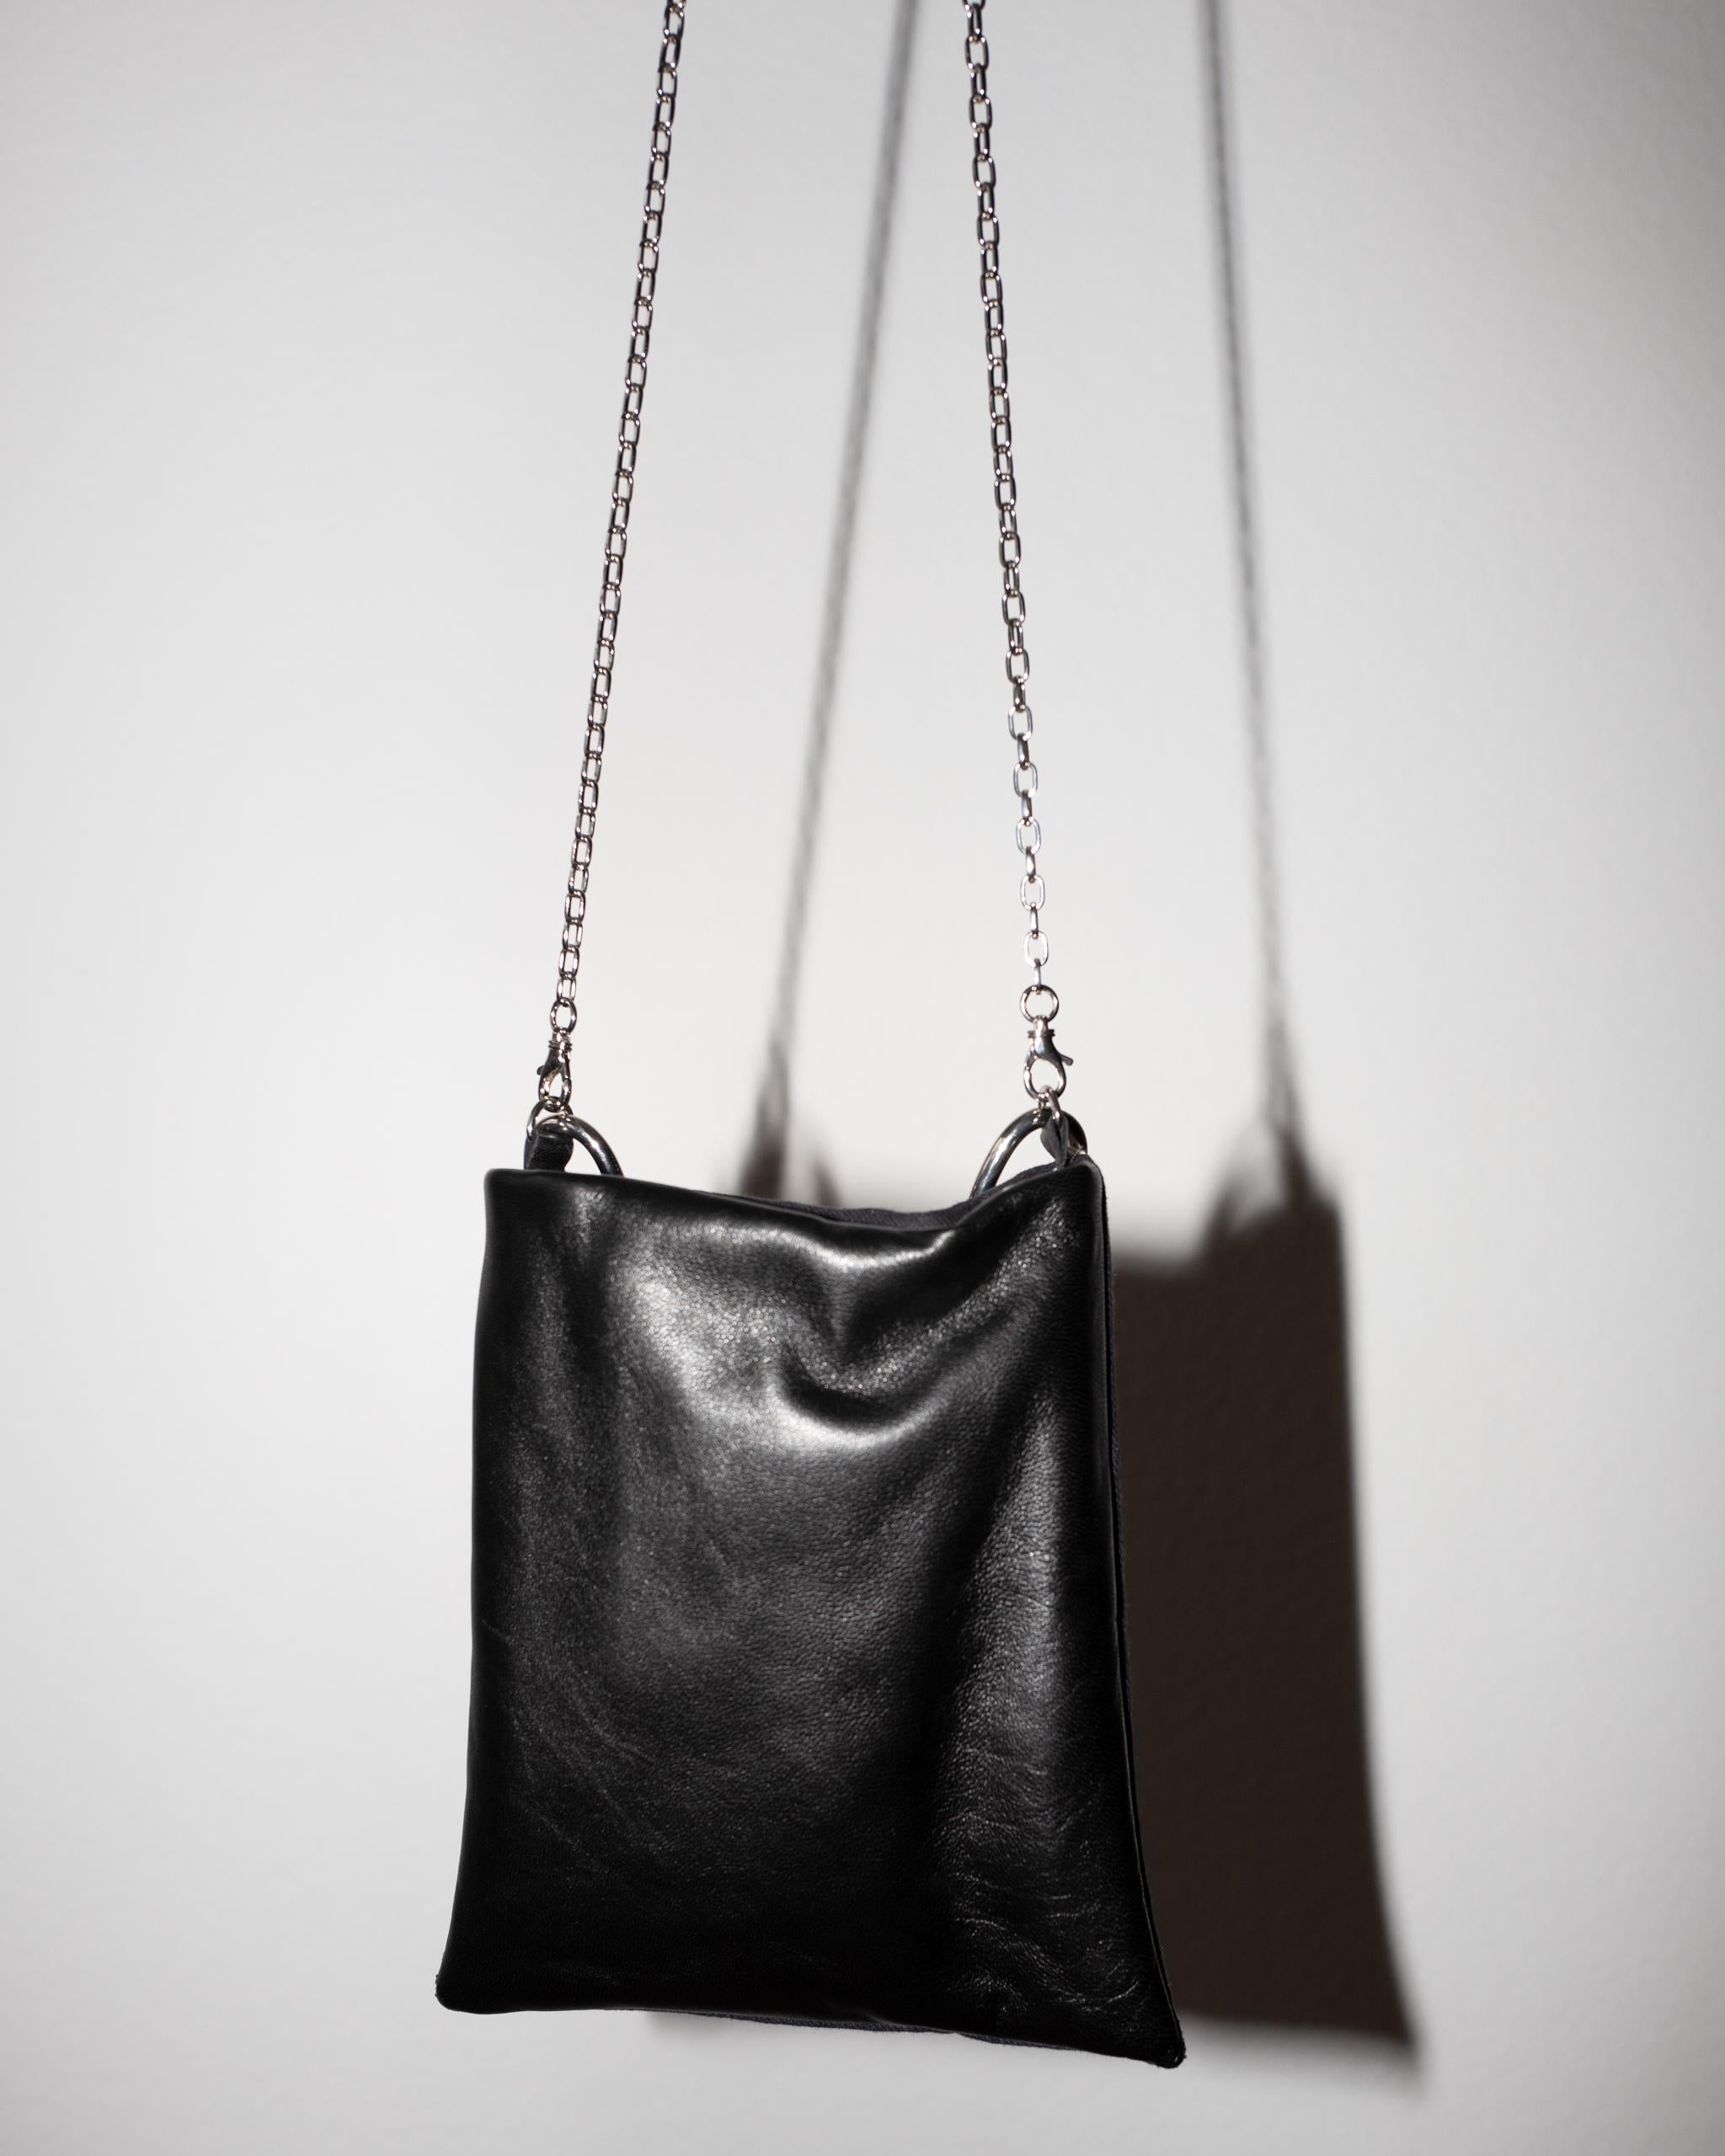 Crystal Star Embellished Black Evening Shoulder Bag Black Leather Chunky Chain 4